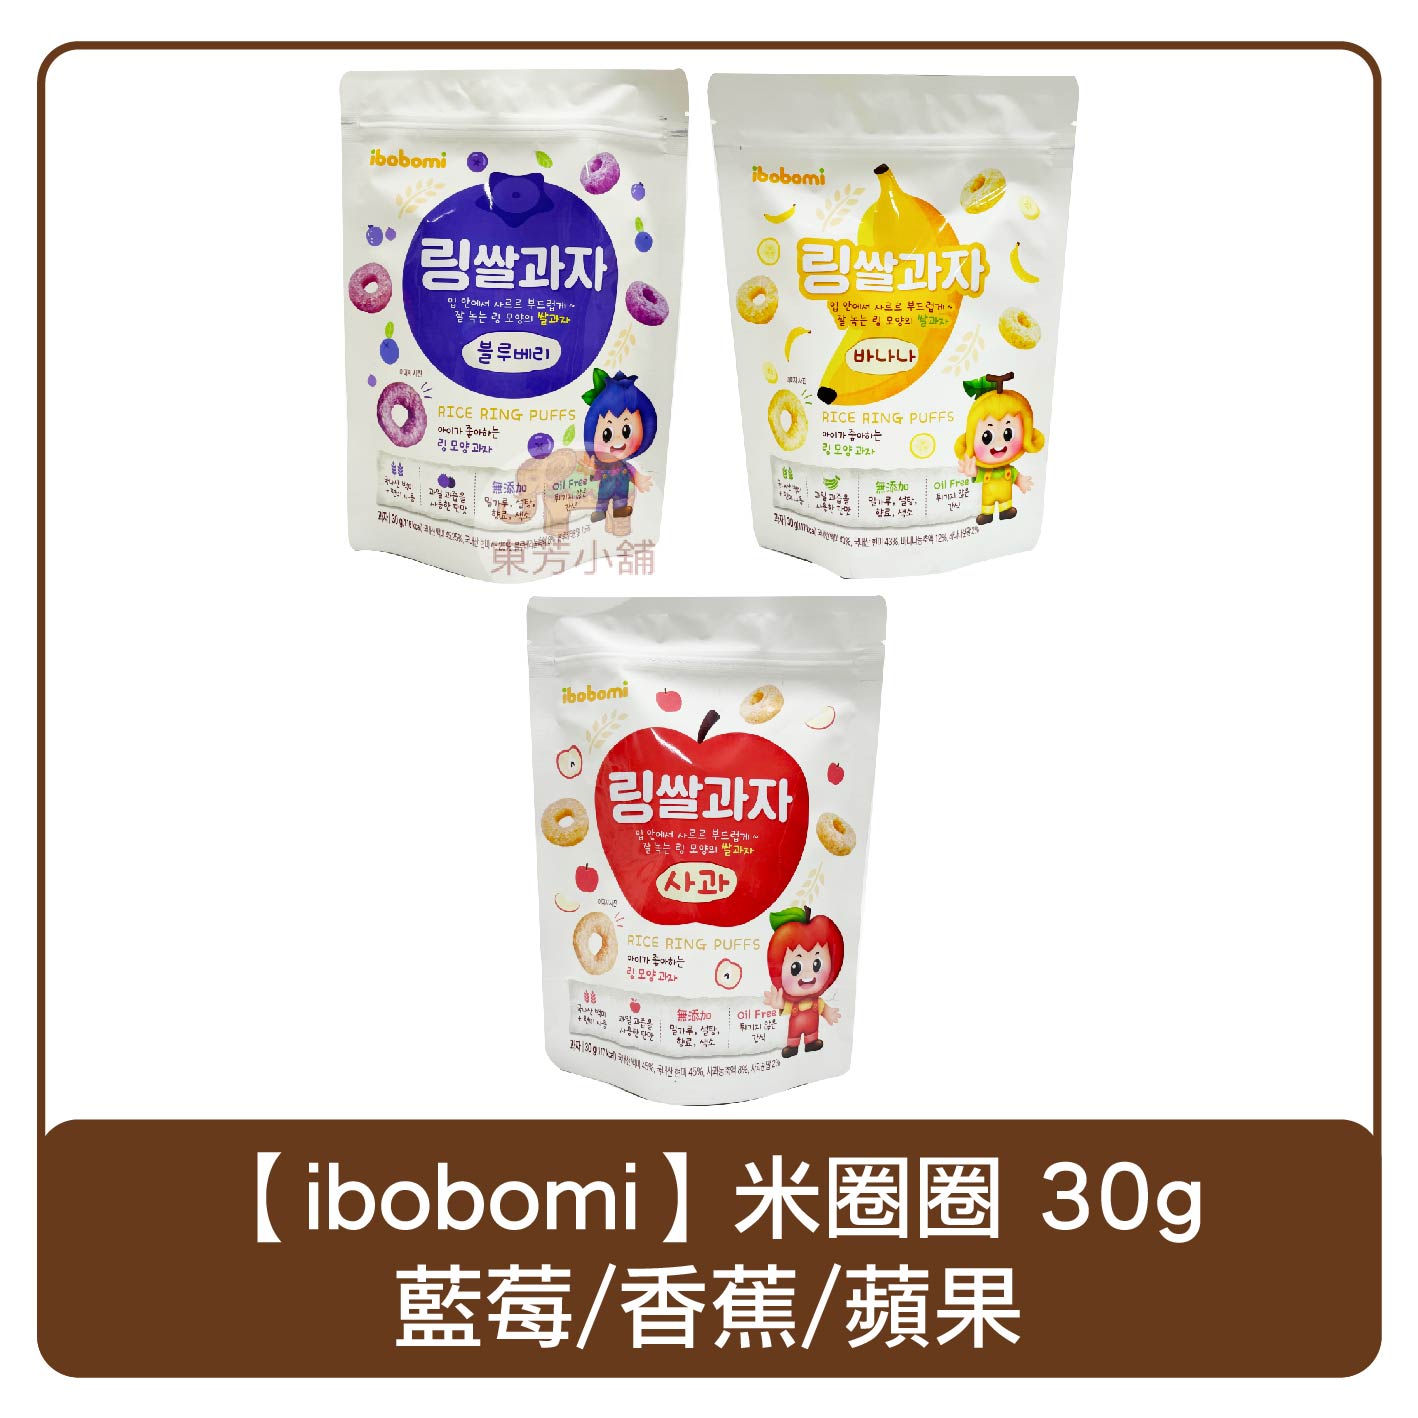 韓國 ibobomi 嬰兒米圈圈 30g 蘋果/香蕉/藍莓 餅乾 米餅